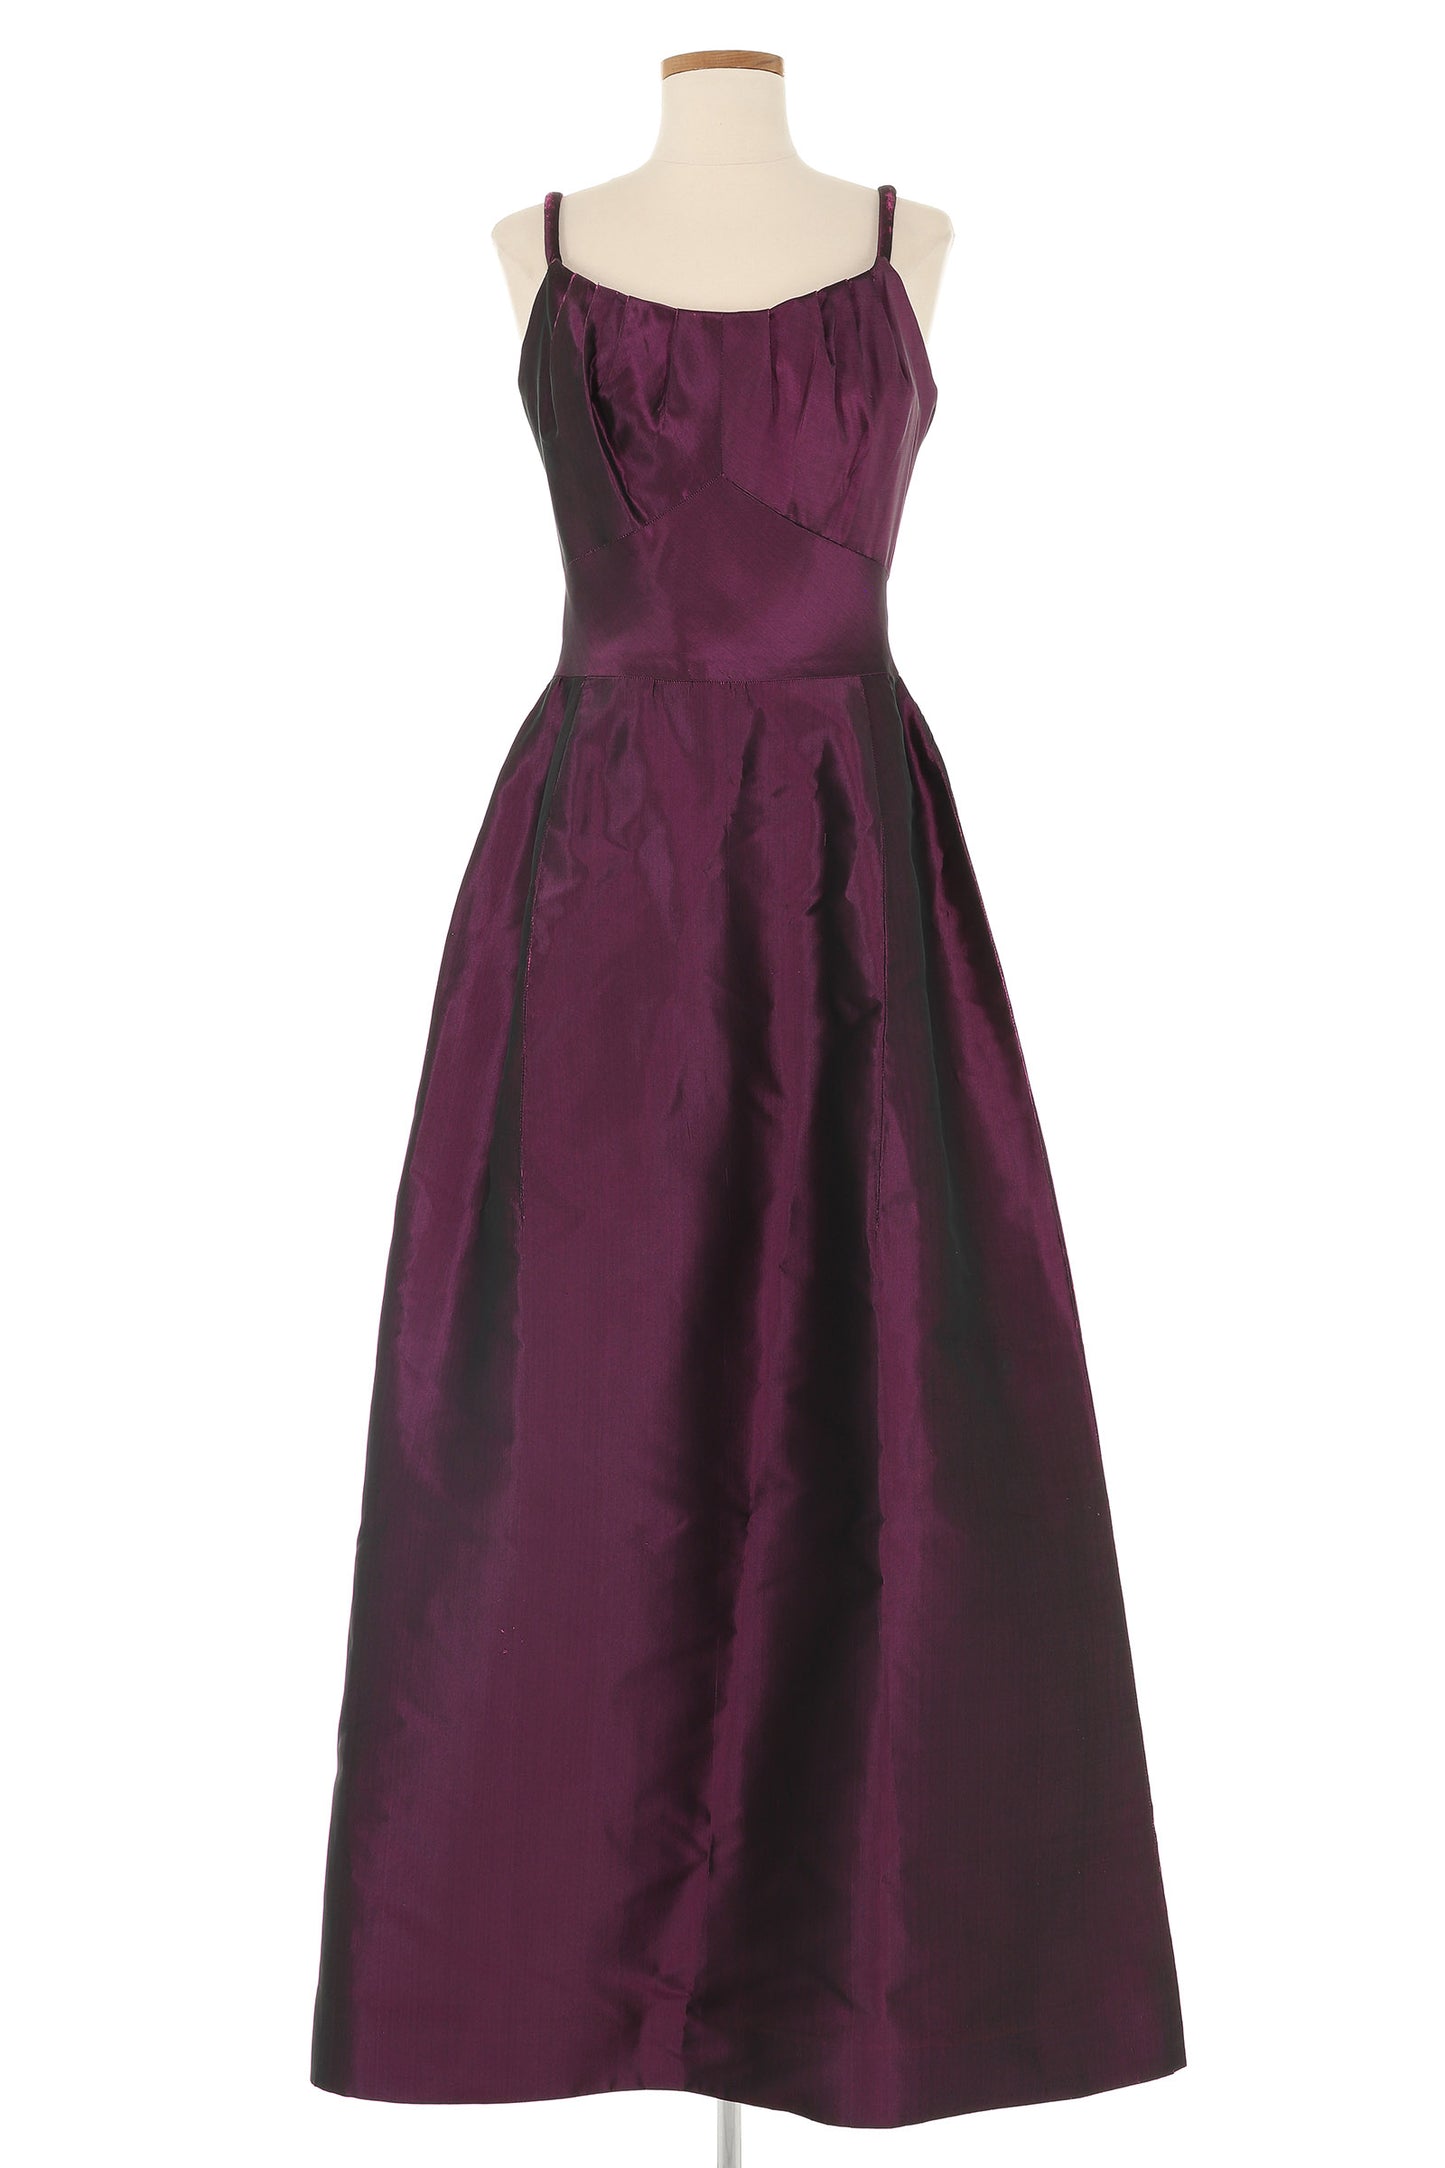 Jean Patou by Karl Lagerfeld Purple Dress